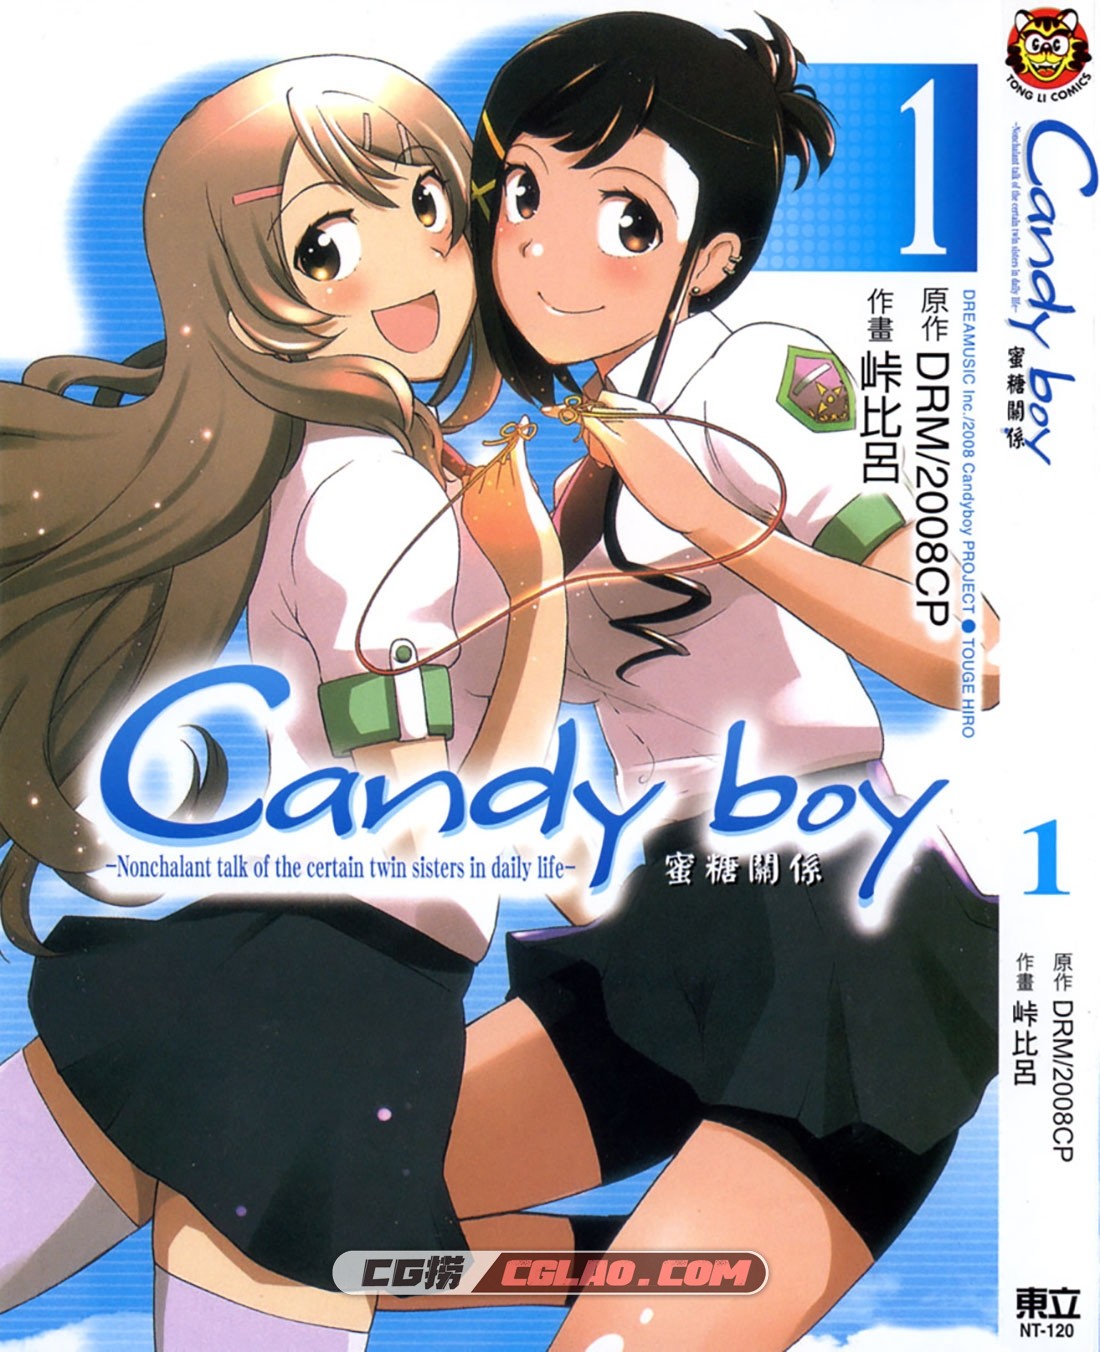 Candy Boy蜜糖关系 DRM 2008CP 峠比吕 1-2册完结 漫画网盘下载,CanCover.jpg